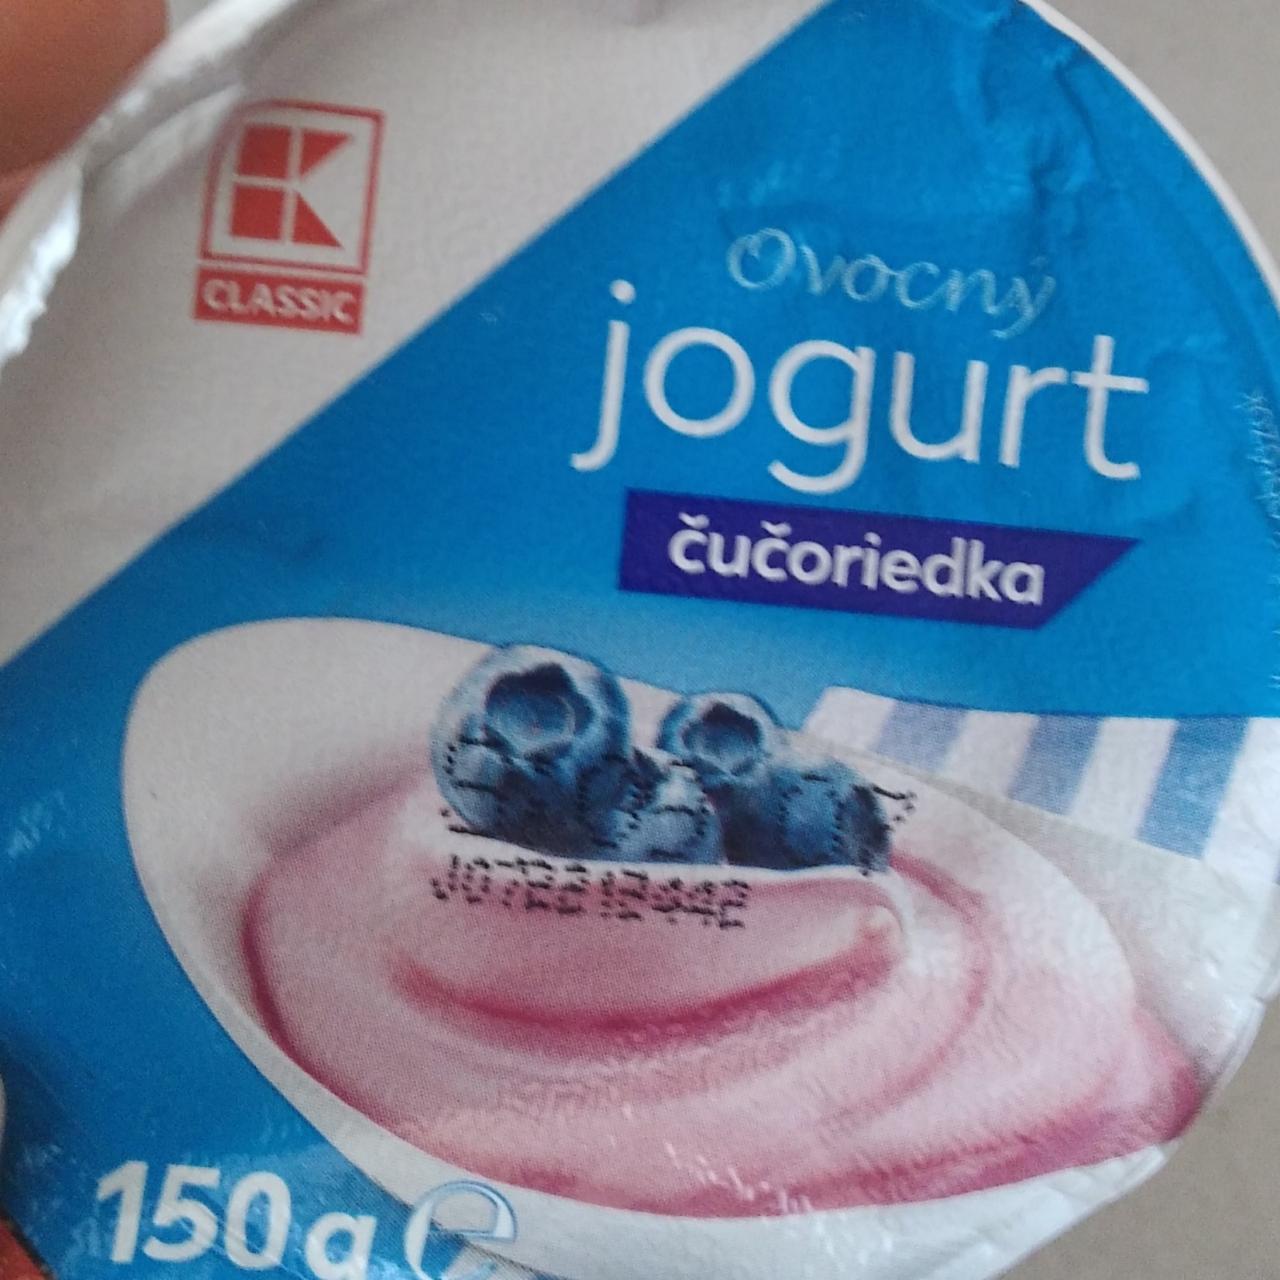 Fotografie - Ovocný jogurt čučoriedka K-Classic